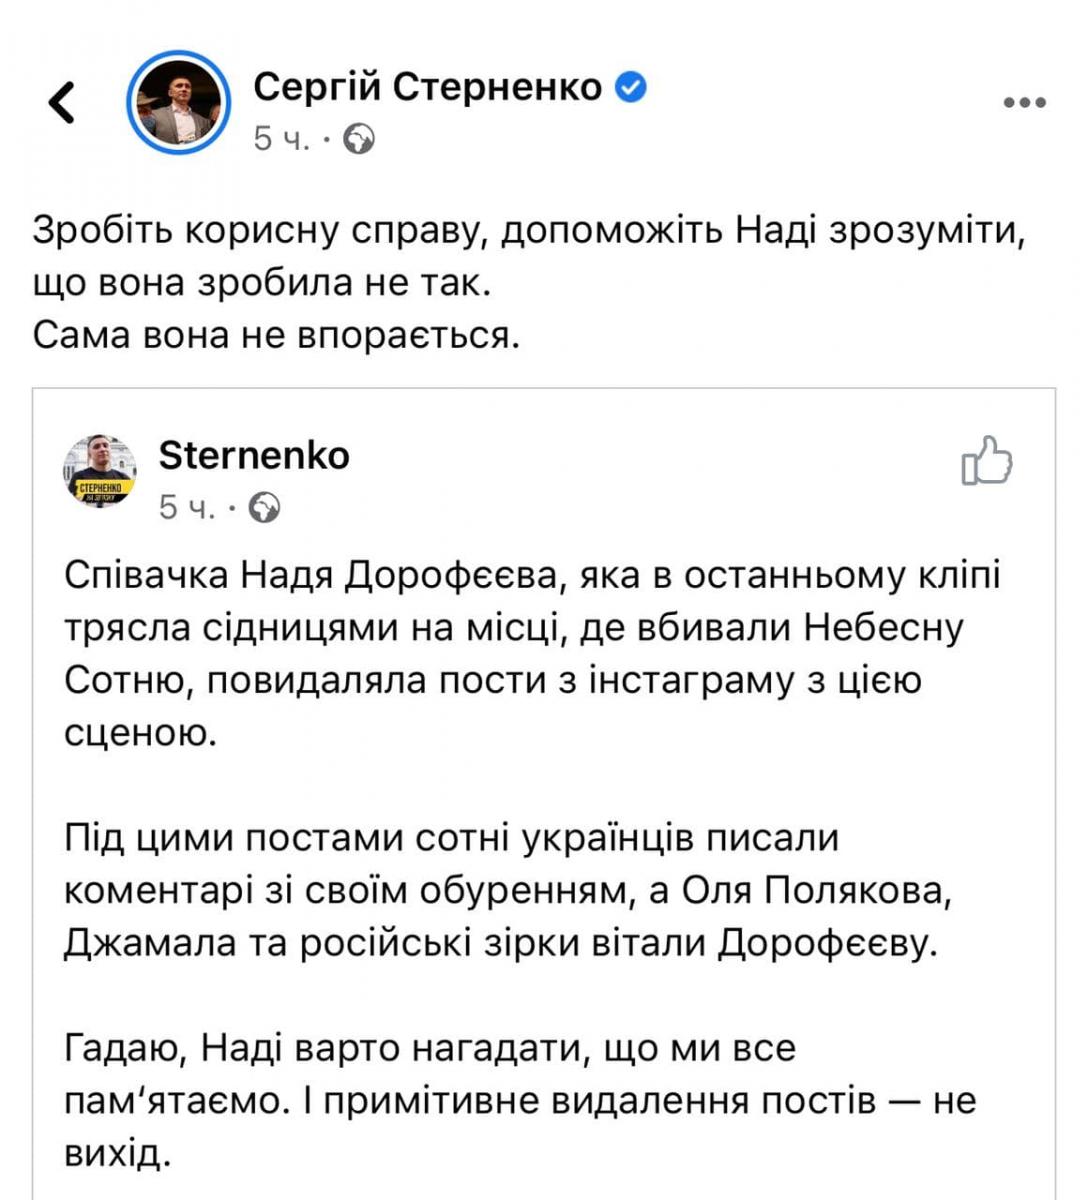 В Сети возник скандал из-за дебюта Дорофеевой на Майдане